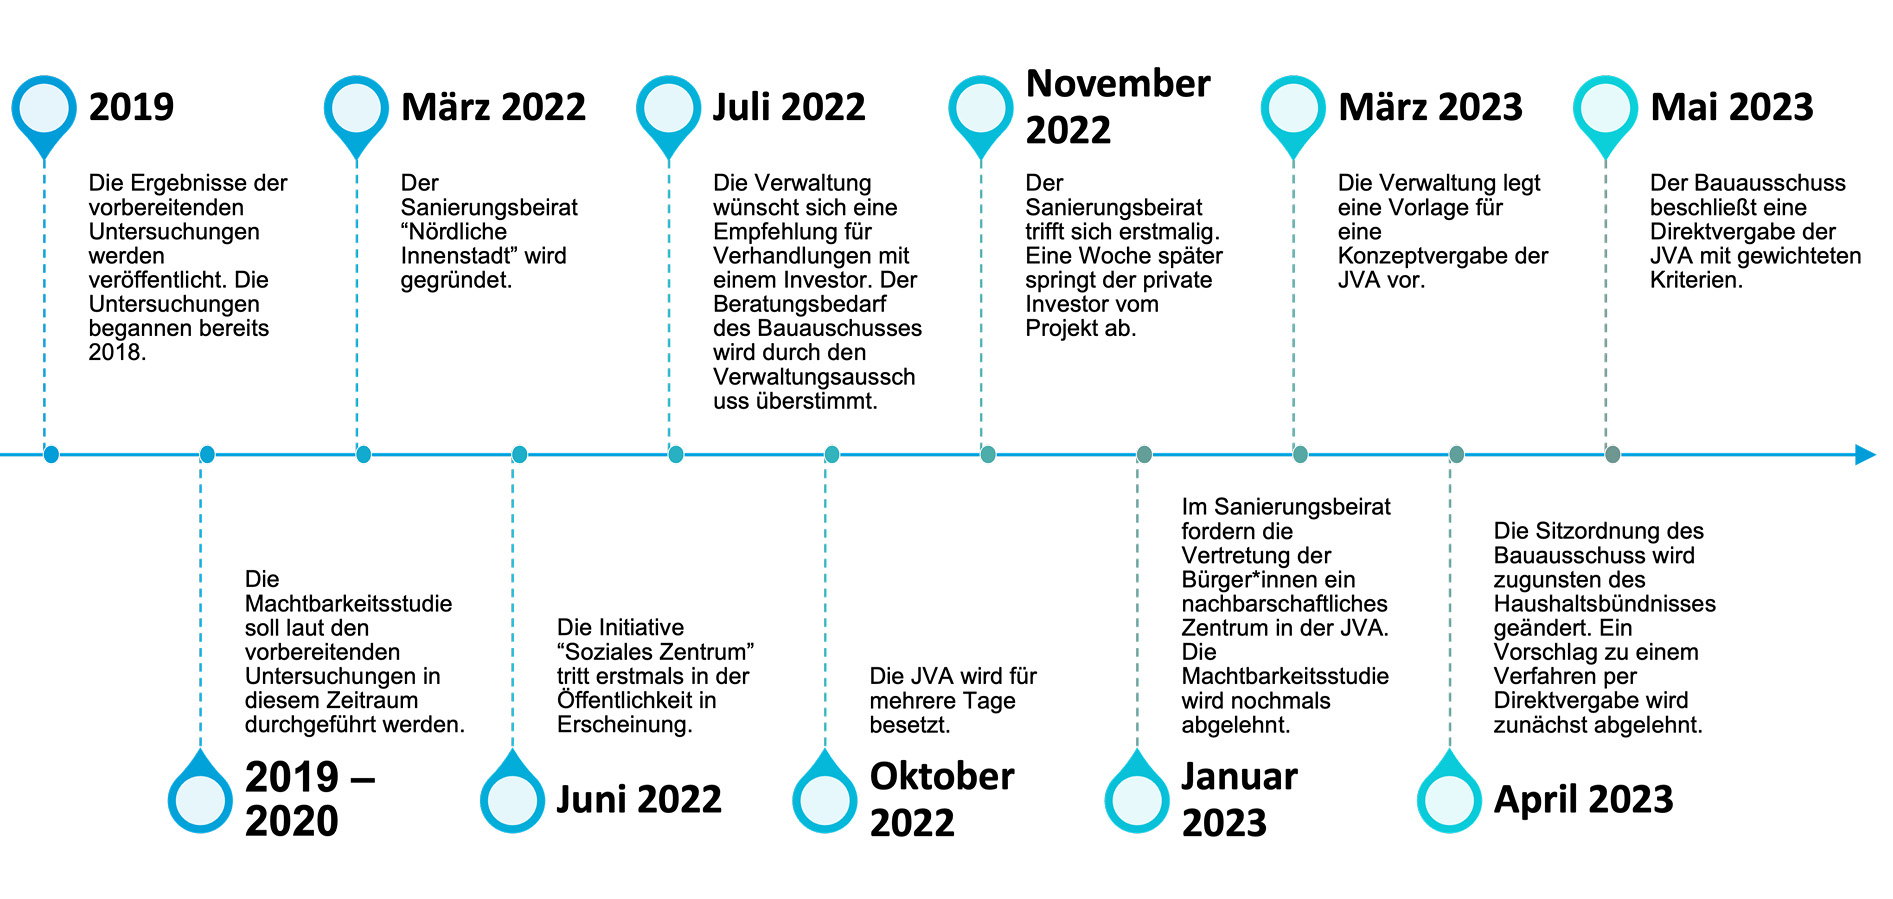 Die Abbildung zeigt einen Zeitstrahl von 2019 bis 2023 über die wichtigsten Ereignisse im Verkaufsprozess der alten JVA.